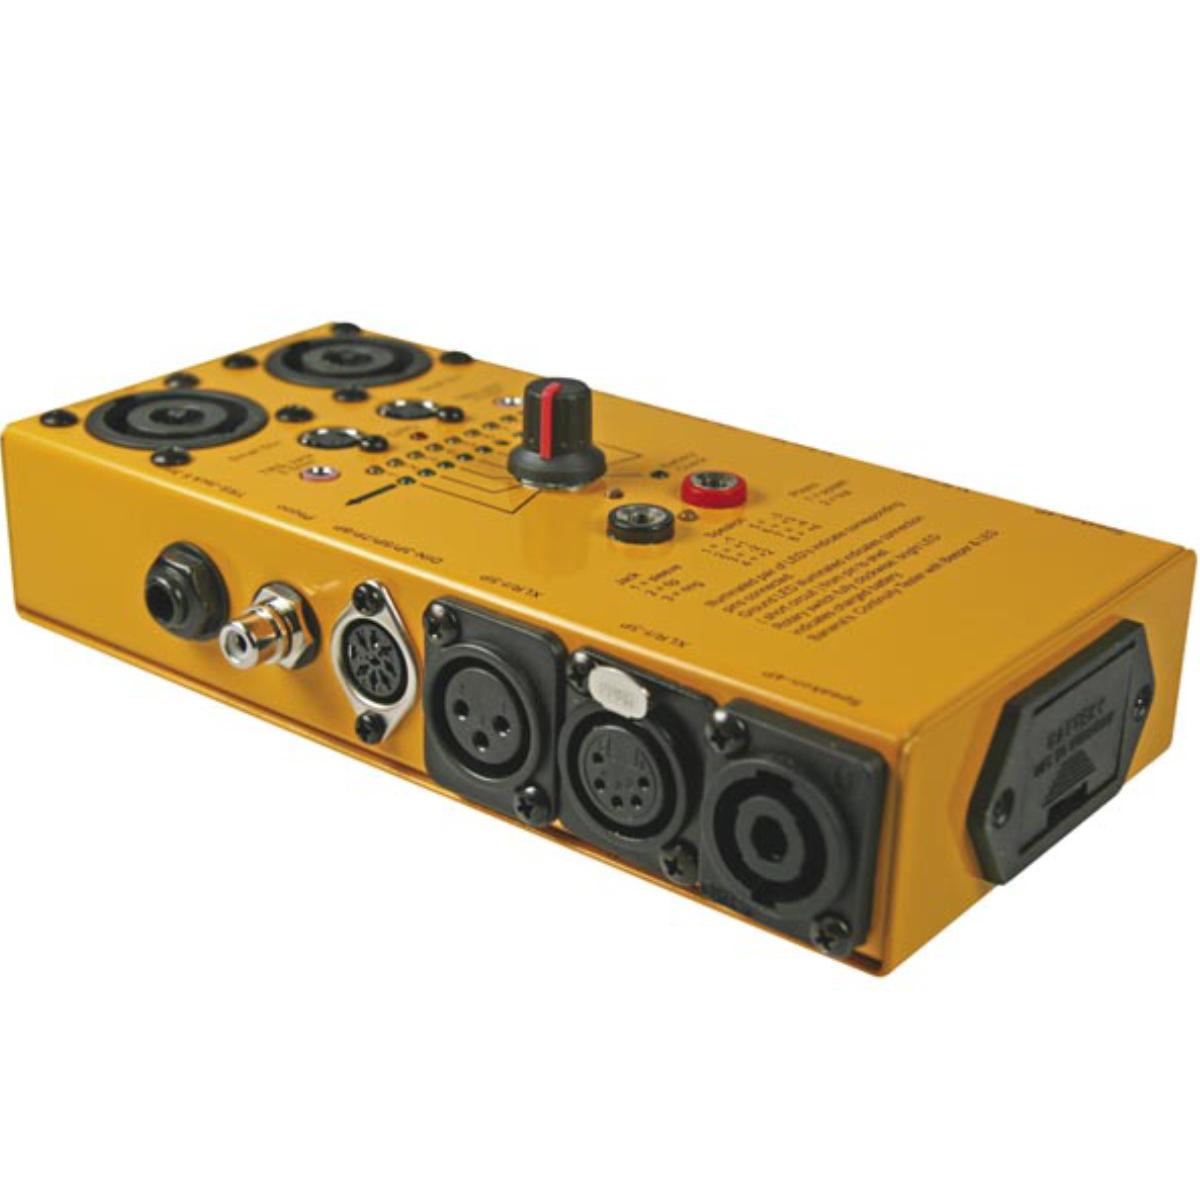 Image of Audio kabel tester - Velleman